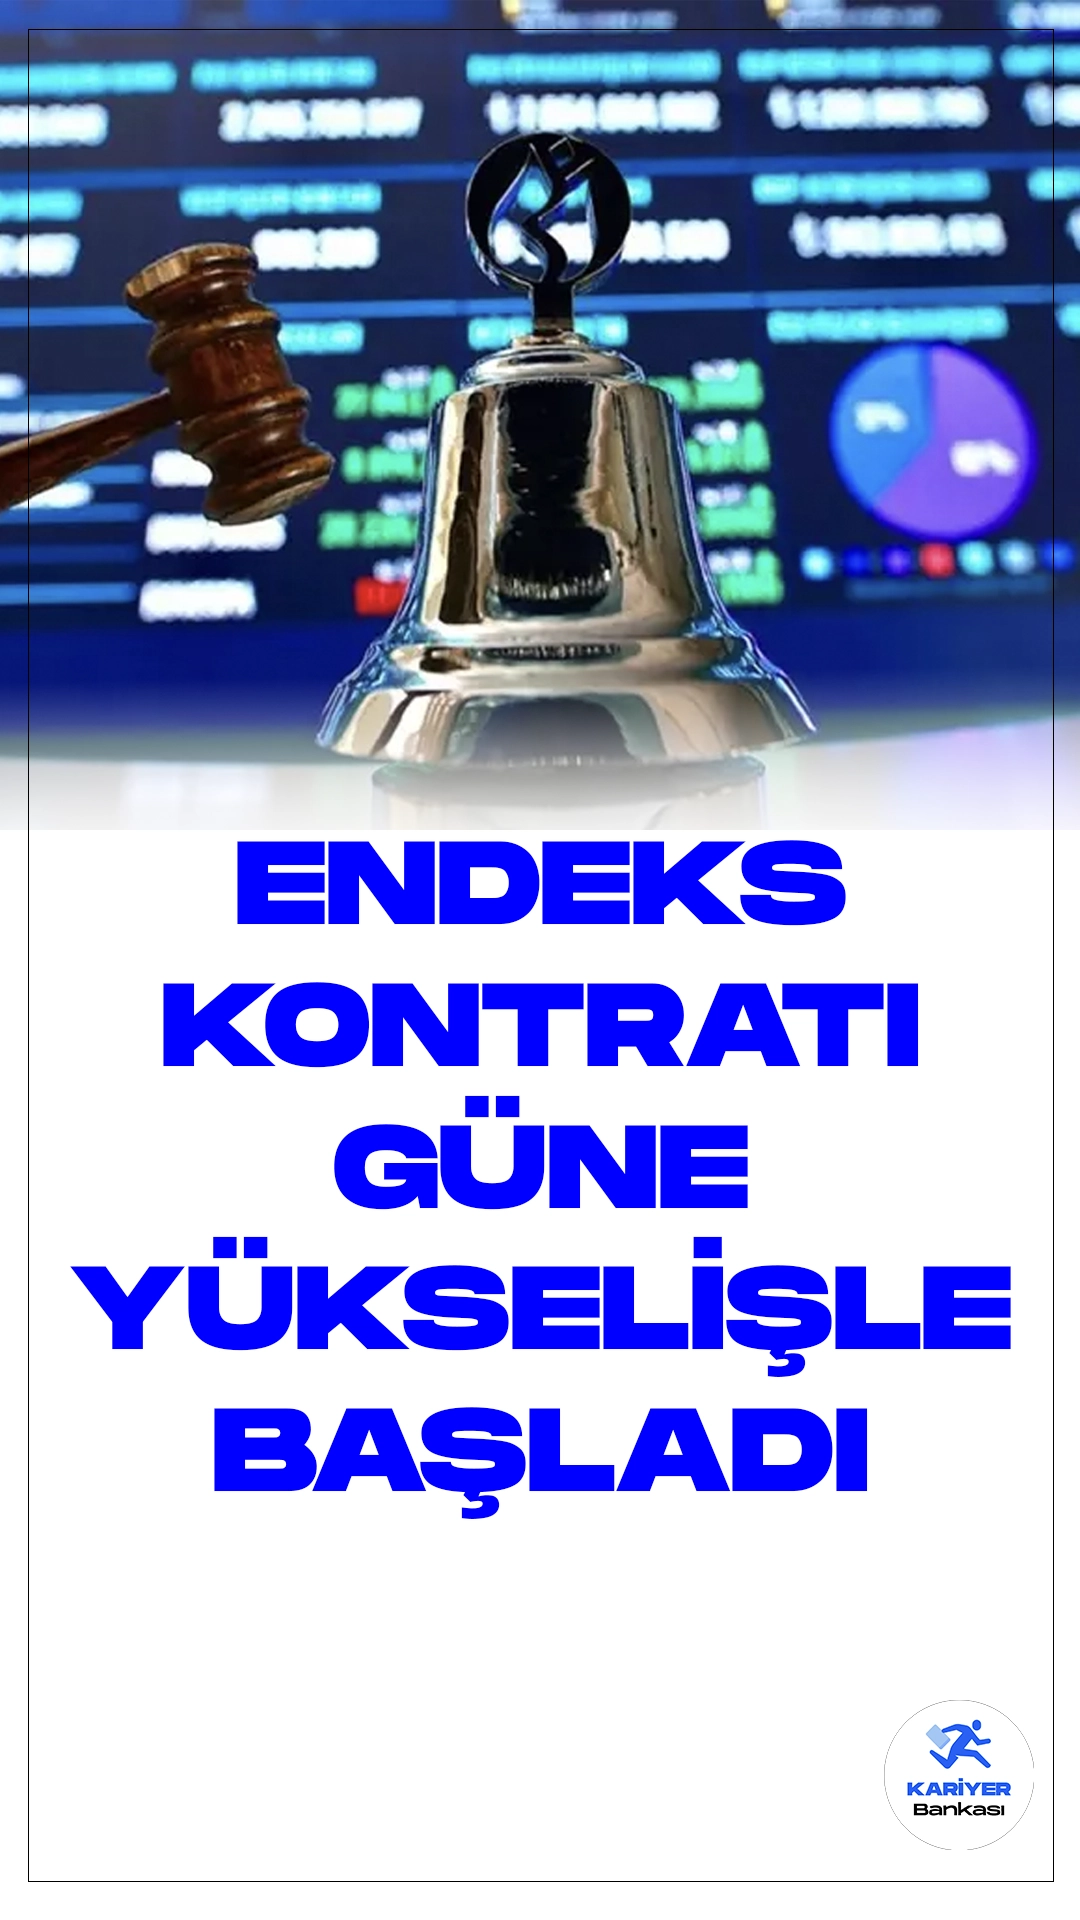 Borsa İstanbul Vadeli İşlem ve Opsiyon Piyasası'nda (VİOP) Endeks Kontratı Güne Artışla Başladı.Borsa İstanbul Vadeli İşlem ve Opsiyon Piyasası'nda (VİOP) işlem gören aralık vadeli BIST 30 endeks kontratı, güne yüzde 0,1'lik bir artışla 8.480,00 puandan başladı.